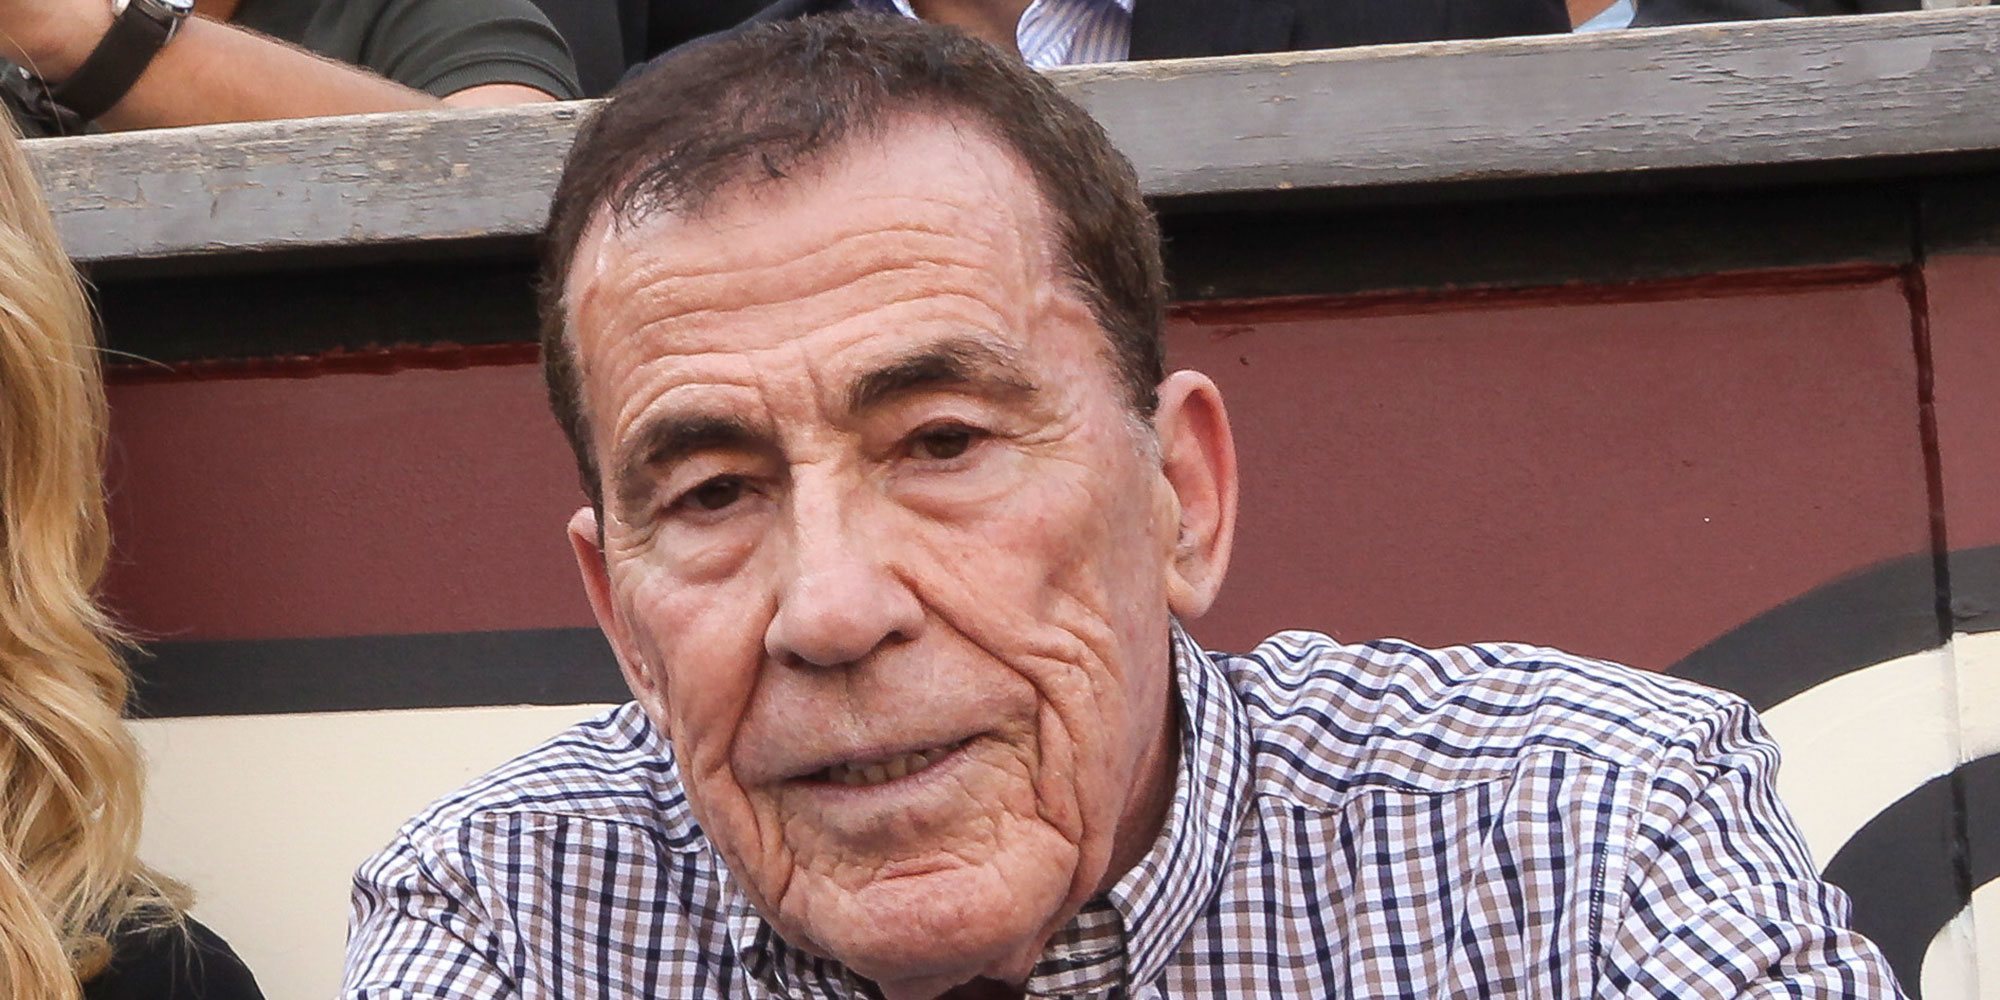 El escritor Fernando Sánchez Dragó, de 81 años, protagoniza una película porno y sadomasoquista